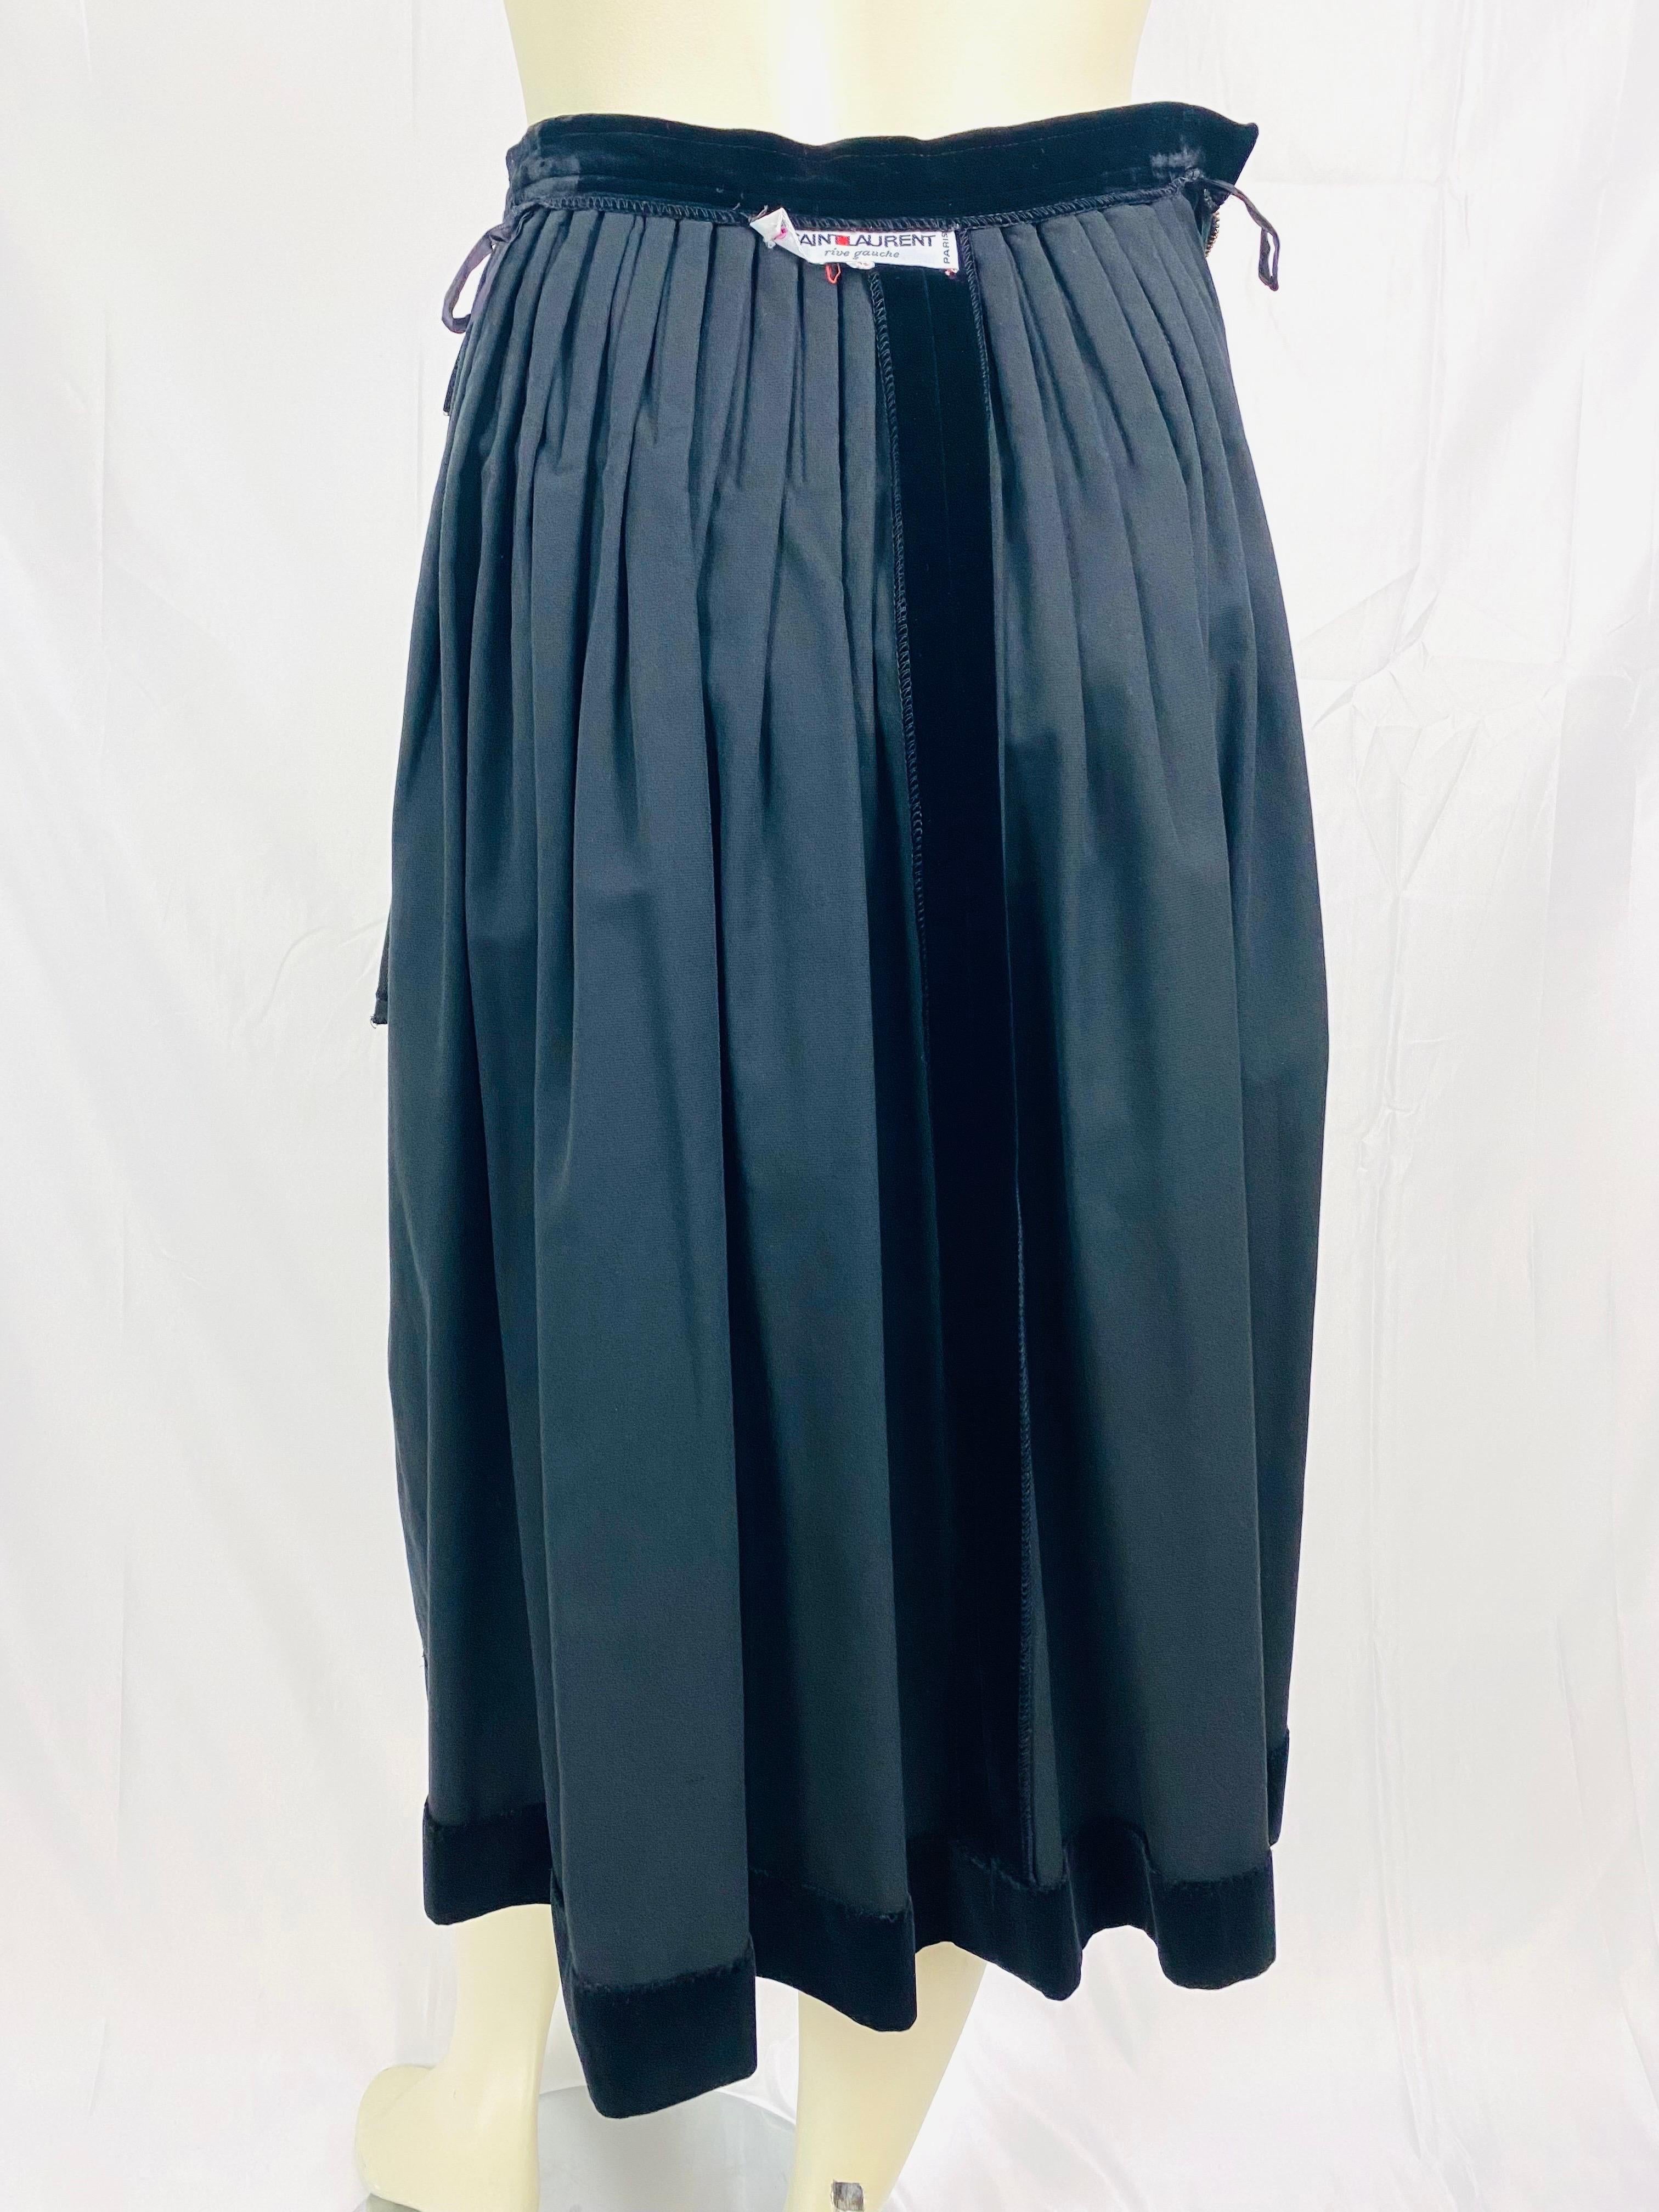 Vintage Yves saint laurent evening skirt from 1970 in black velvet For Sale 1